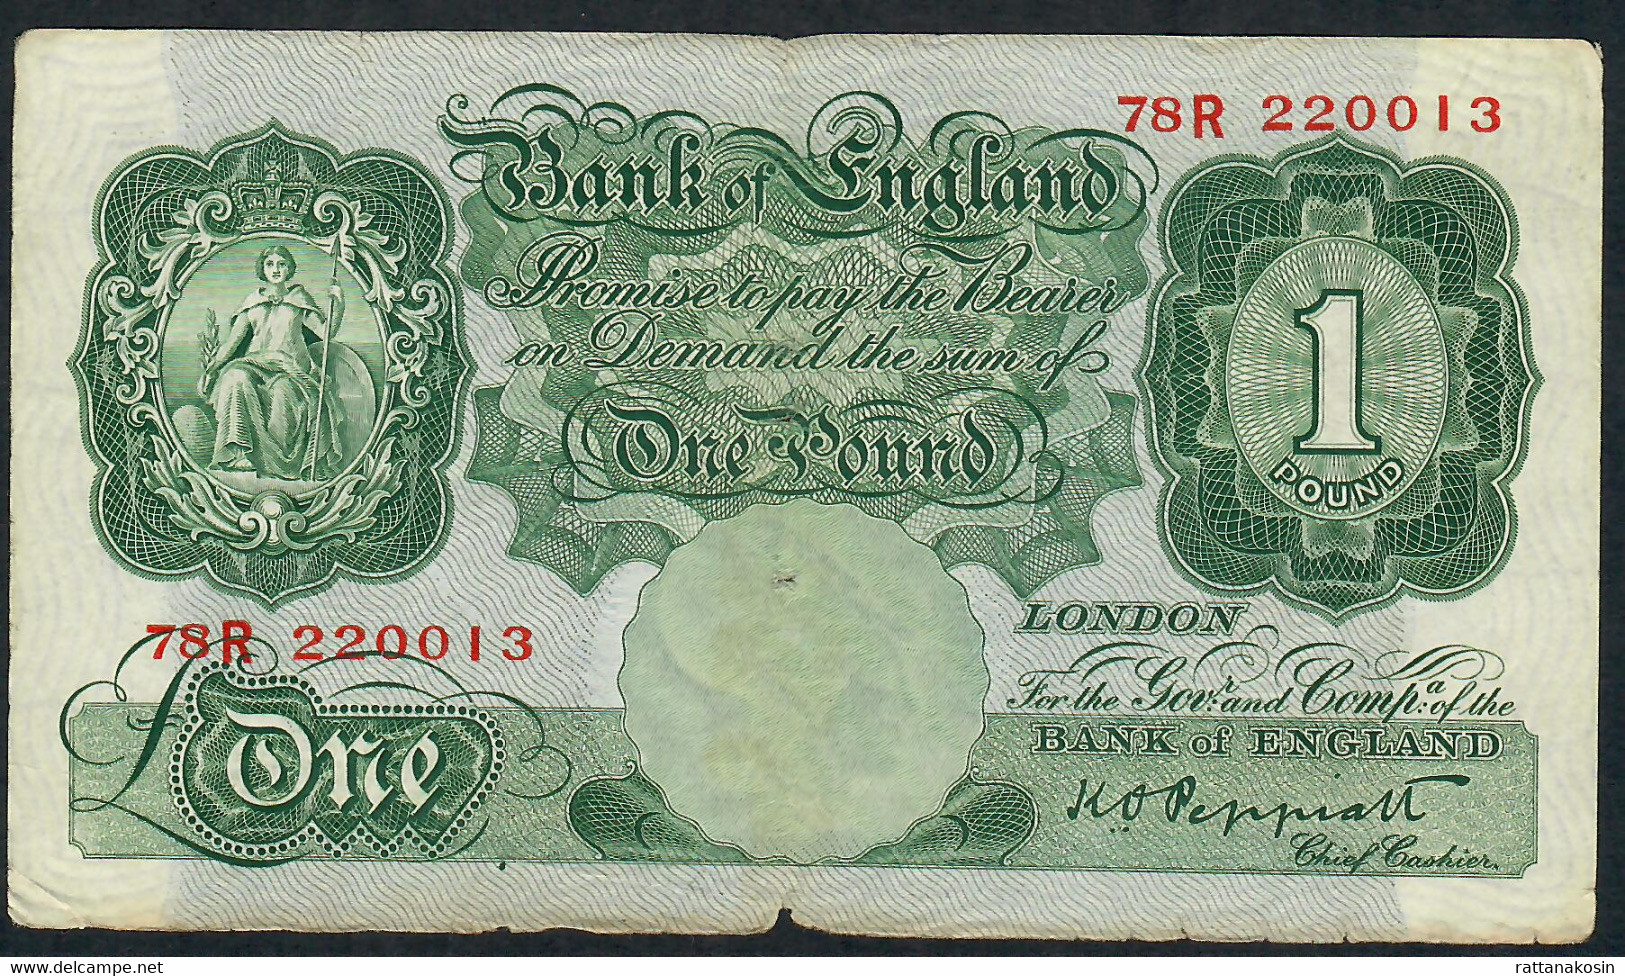 GREAT BRITAIN P369 1 POUND 1948 #78R PEPPIATT  VG - 1 Pound